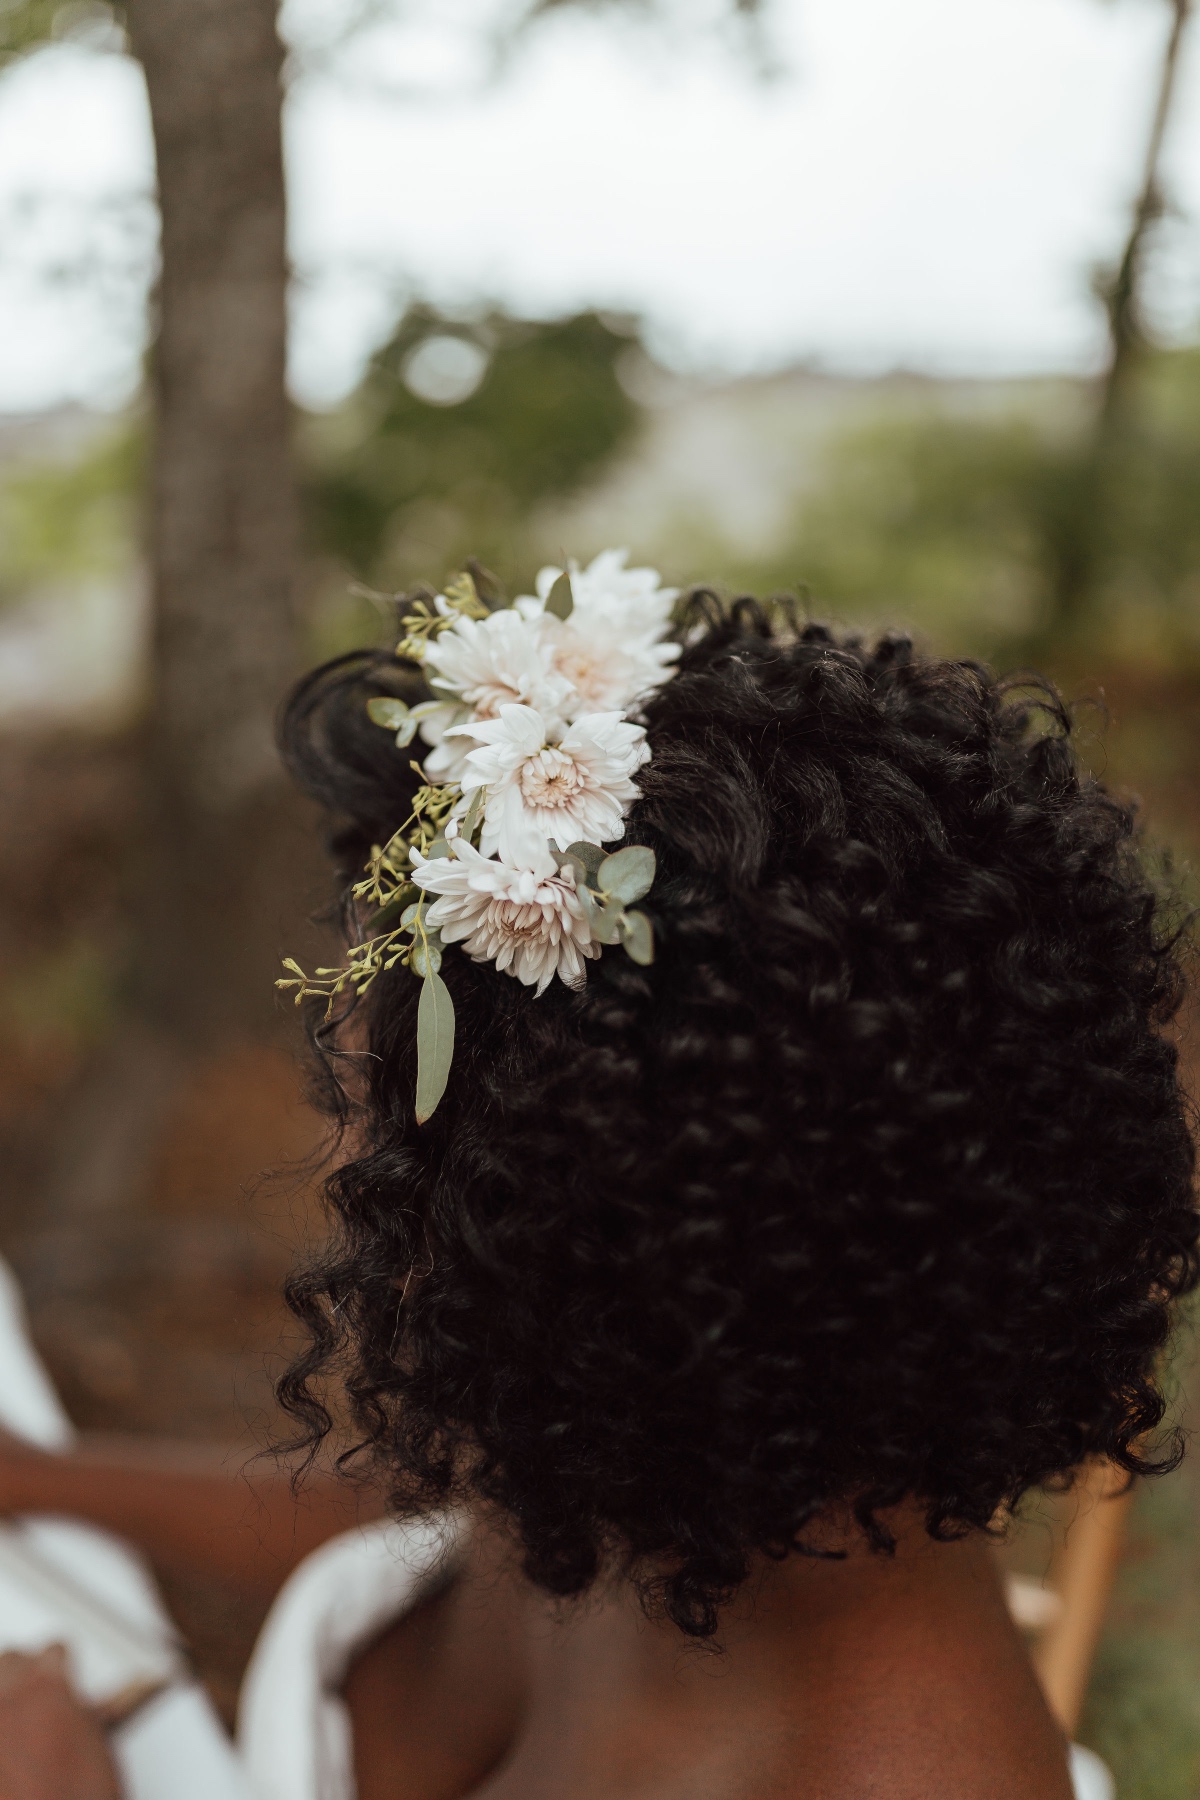 florals in wedding hair